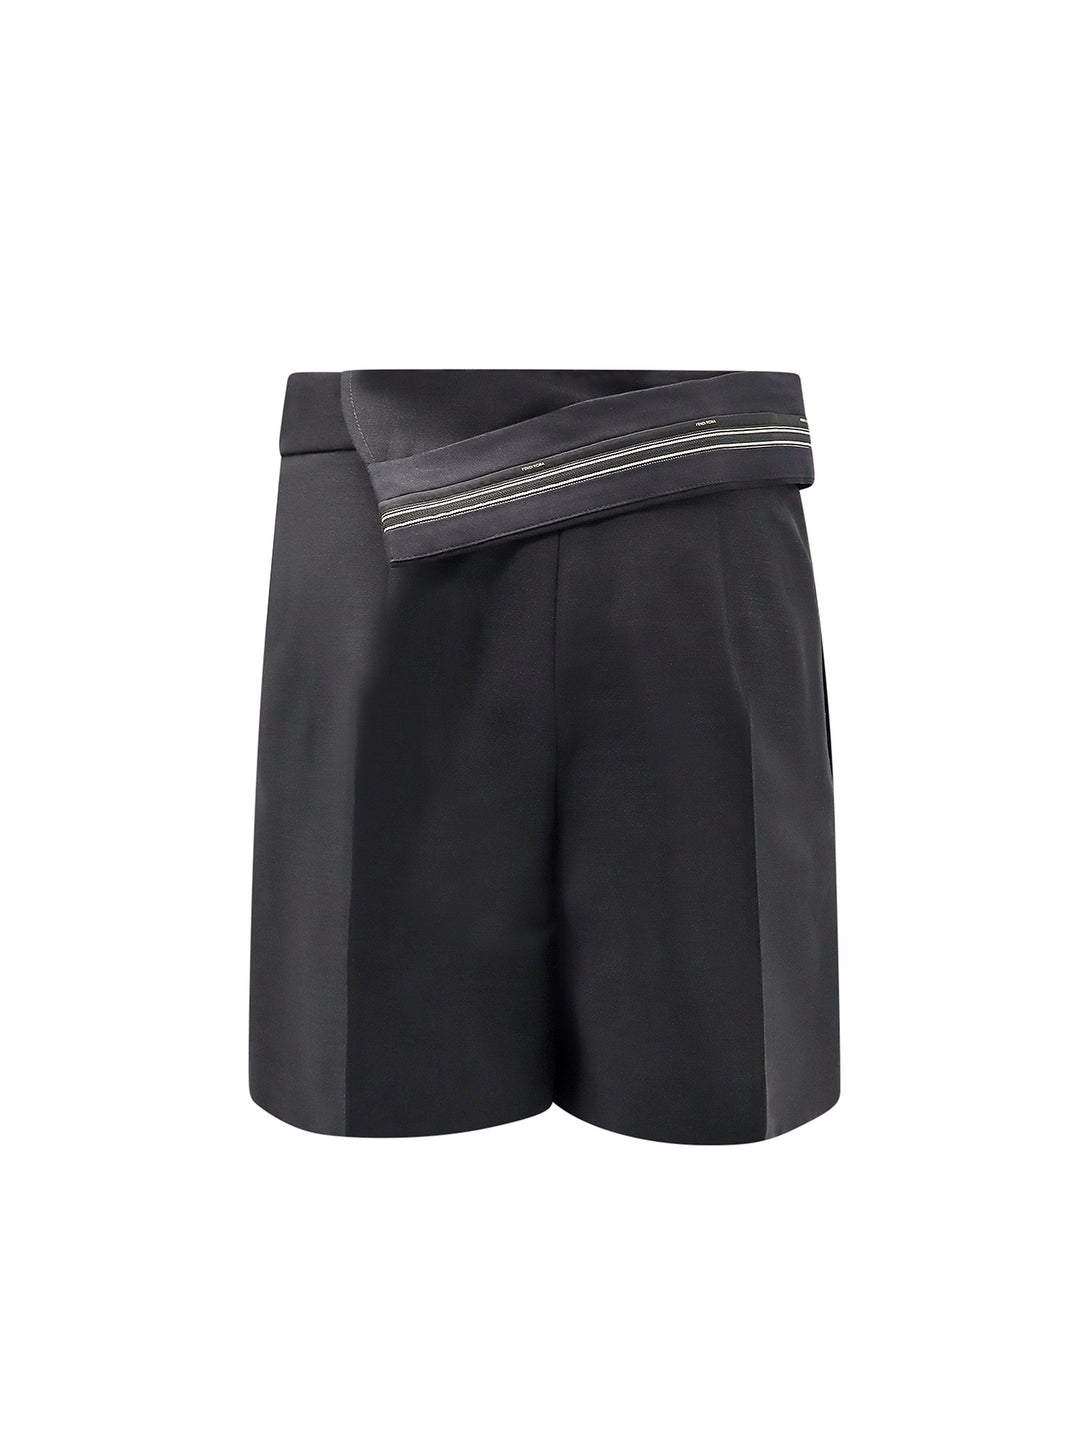 Shorts in lana mohair con dettaglio inside-out in vita con nastro logato Fendi Roma